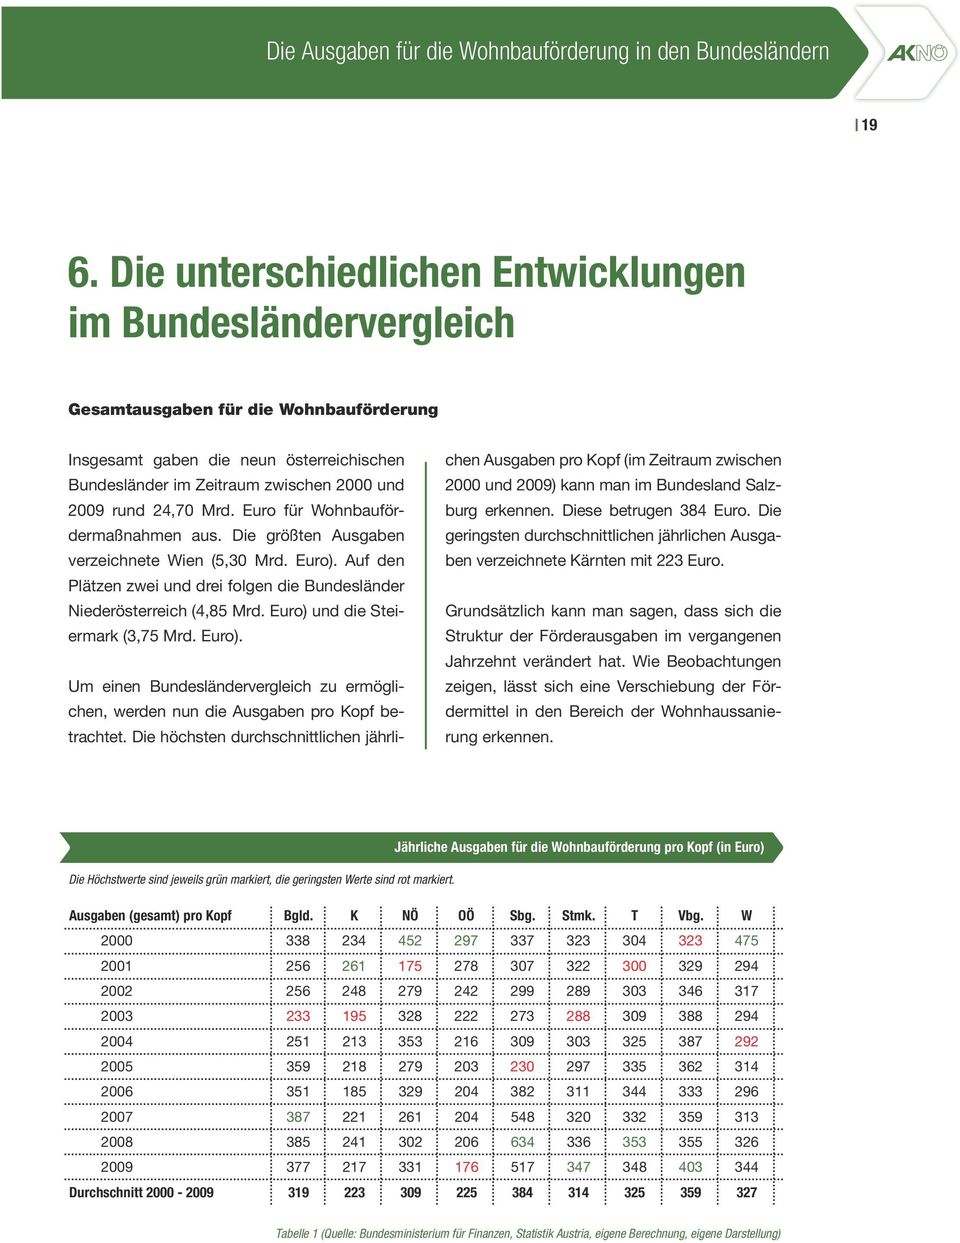 24,70 Mrd. Euro für Wohnbaufördermaßnahmen aus. Die größten Ausgaben verzeichnete Wien (5,30 Mrd. Euro). Auf den Plätzen zwei und drei folgen die Bundesländer Niederösterreich (4,85 Mrd.